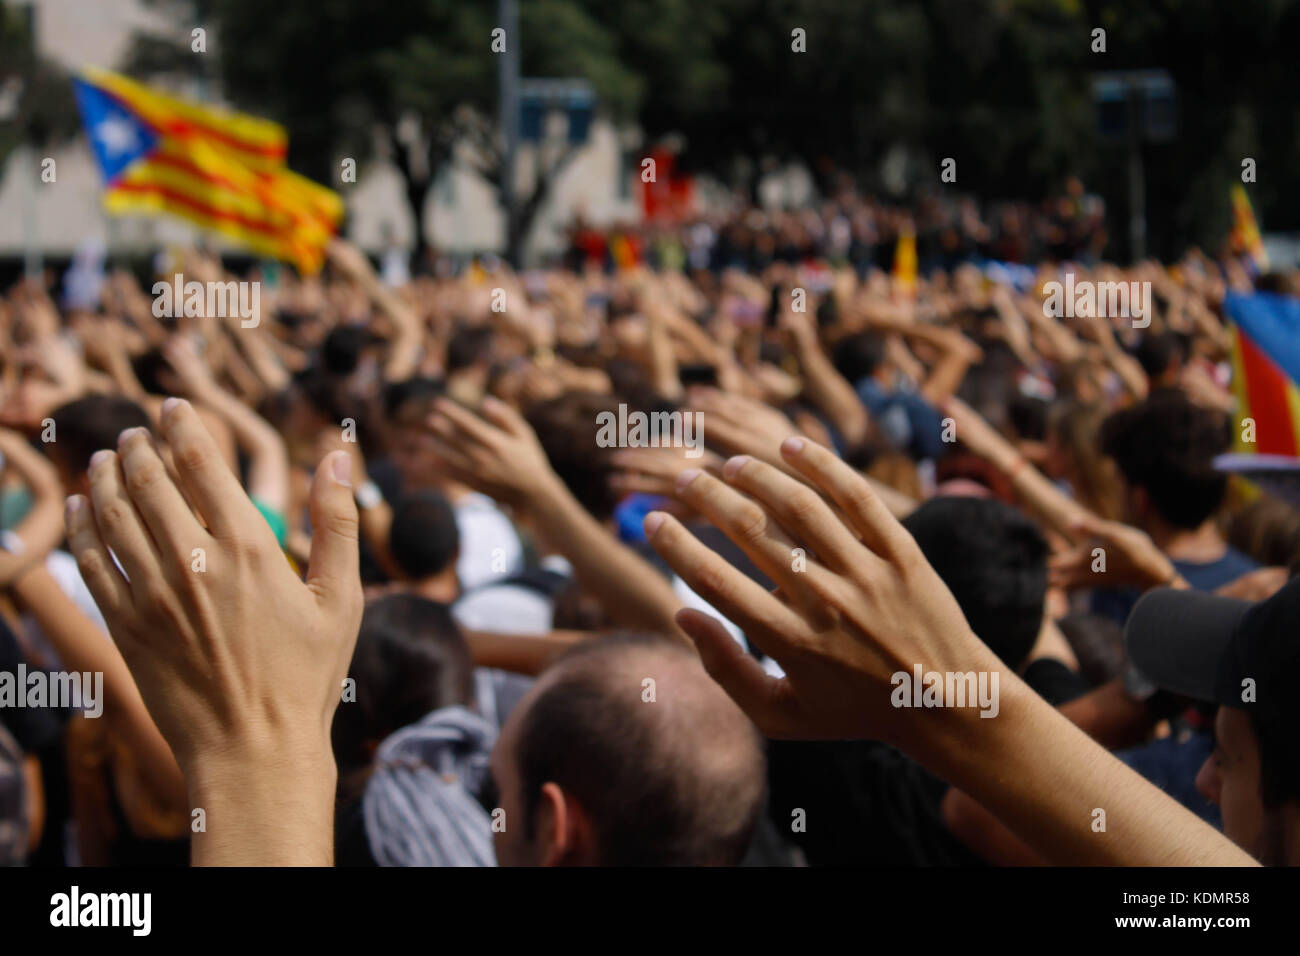 Barcelona, España. 2 de octubre de 2017. Día después del referéndum de Cataluña, los estudiantes protestan contra la violencia policial. Foto de stock